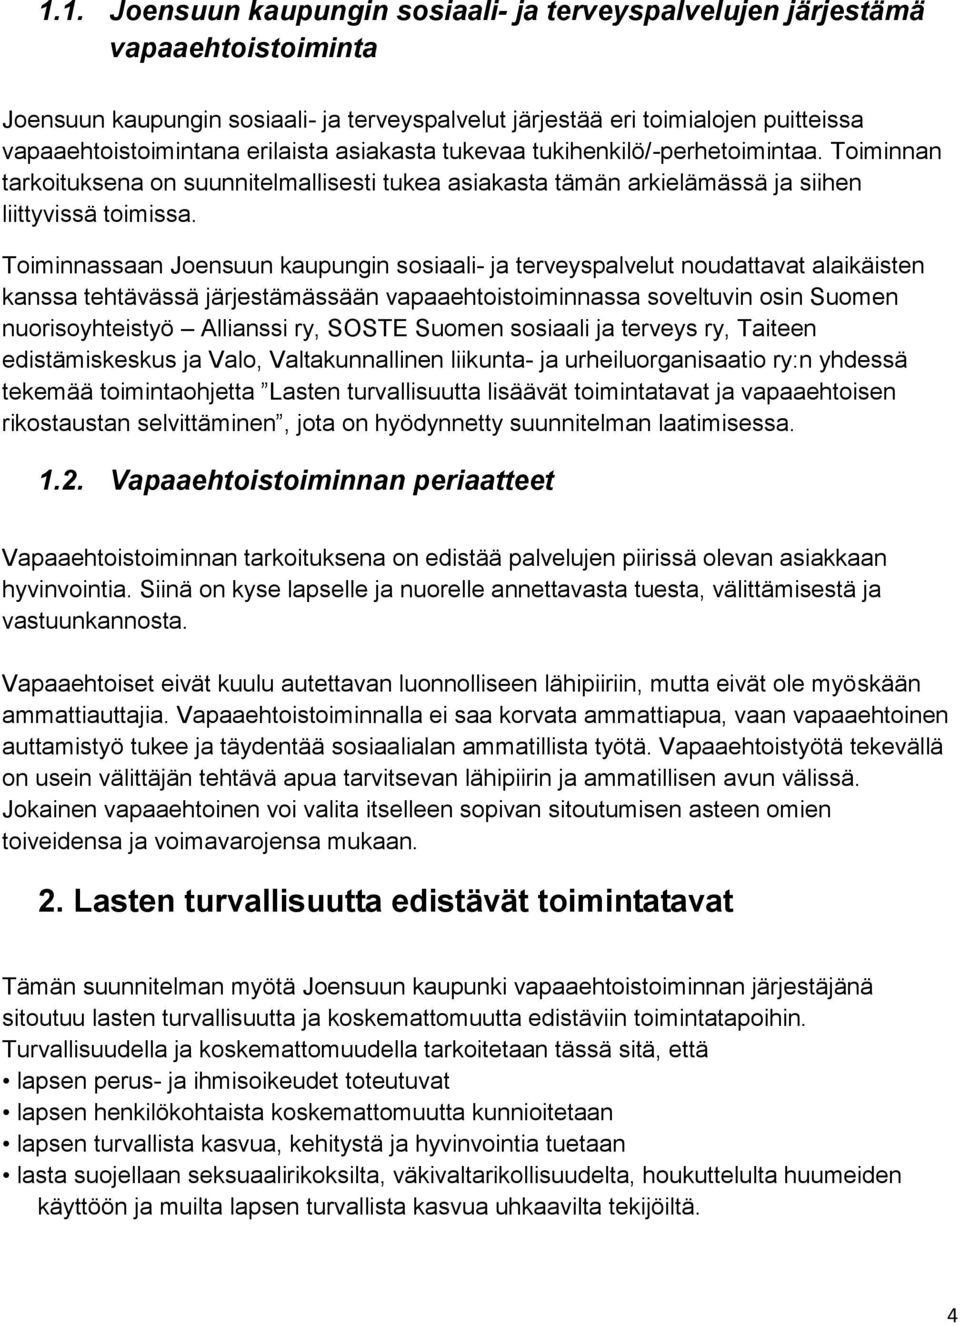 Toiminnassaan Joensuun kaupungin sosiaali- ja terveyspalvelut noudattavat alaikäisten kanssa tehtävässä järjestämässään vapaaehtoistoiminnassa soveltuvin osin Suomen nuorisoyhteistyö Allianssi ry,